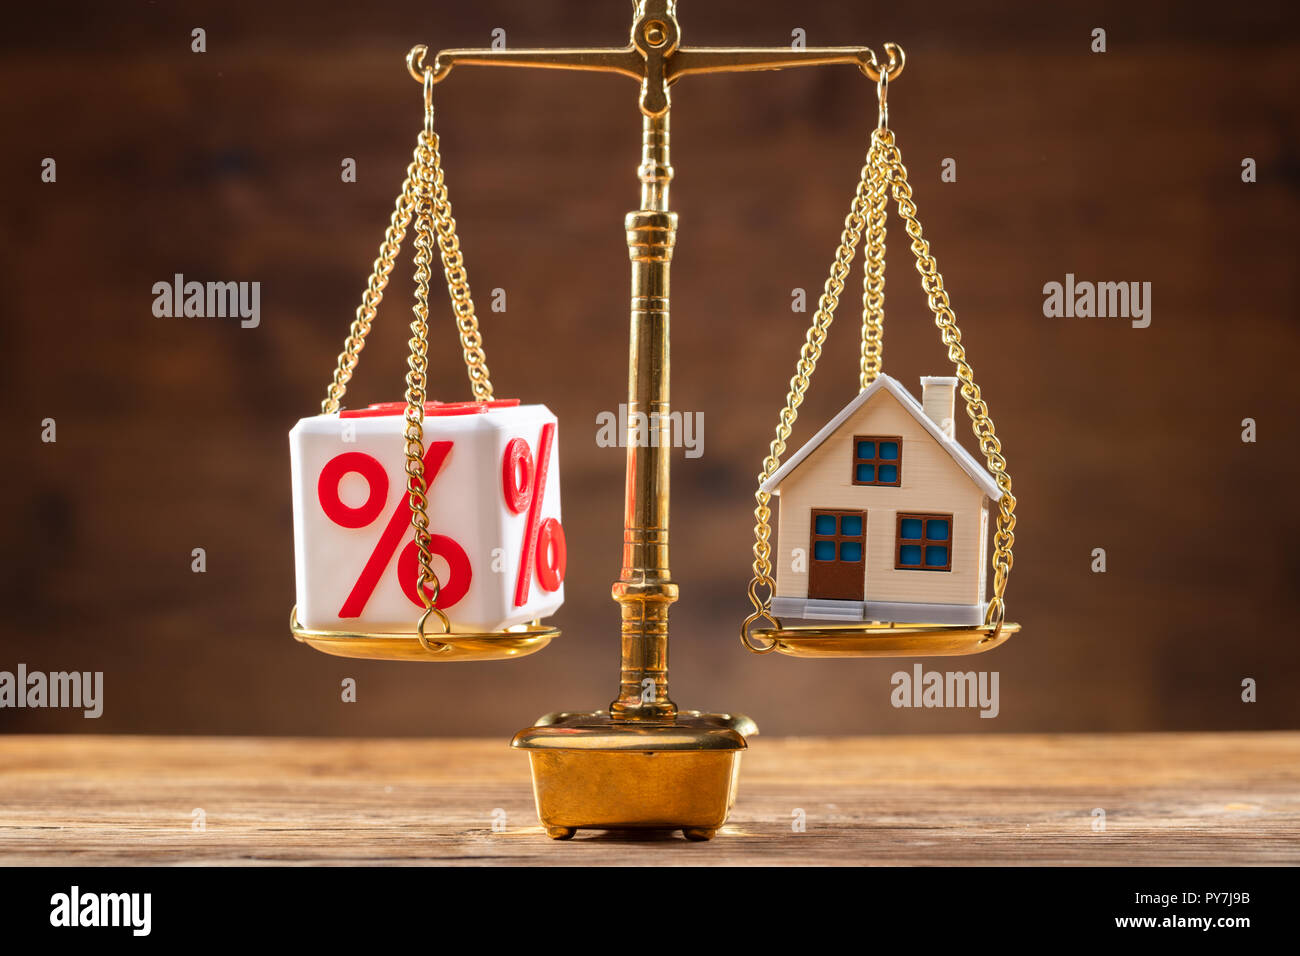 Golden Gerechtigkeit, welche Balance zwischen Prozentzeichen Block und Haus Modell auf hölzernen Schreibtisch Stockfoto